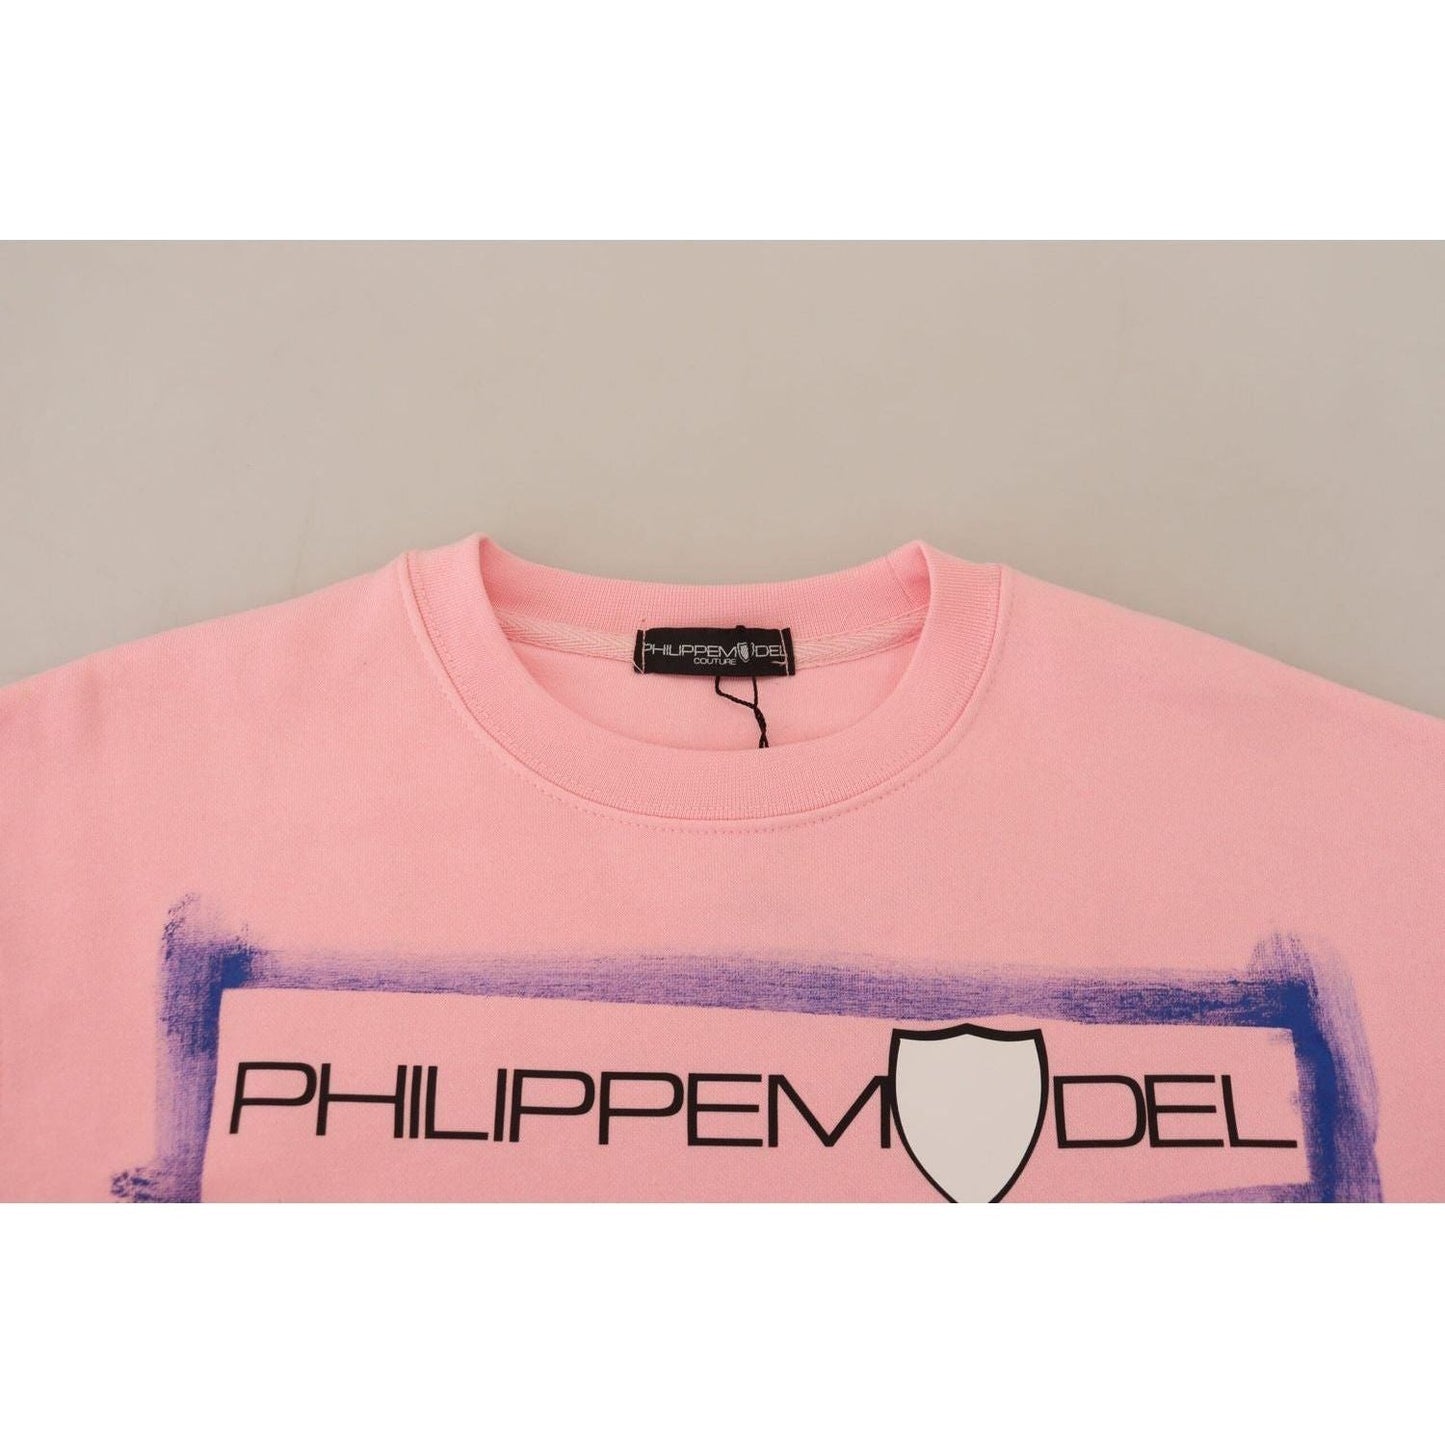 Philippe Model Elegant Pink Long Sleeve Pullover Sweater pink-printed-long-sleeves-pullover-sweater IMG_9293-scaled-24fea8ab-b3a.jpg